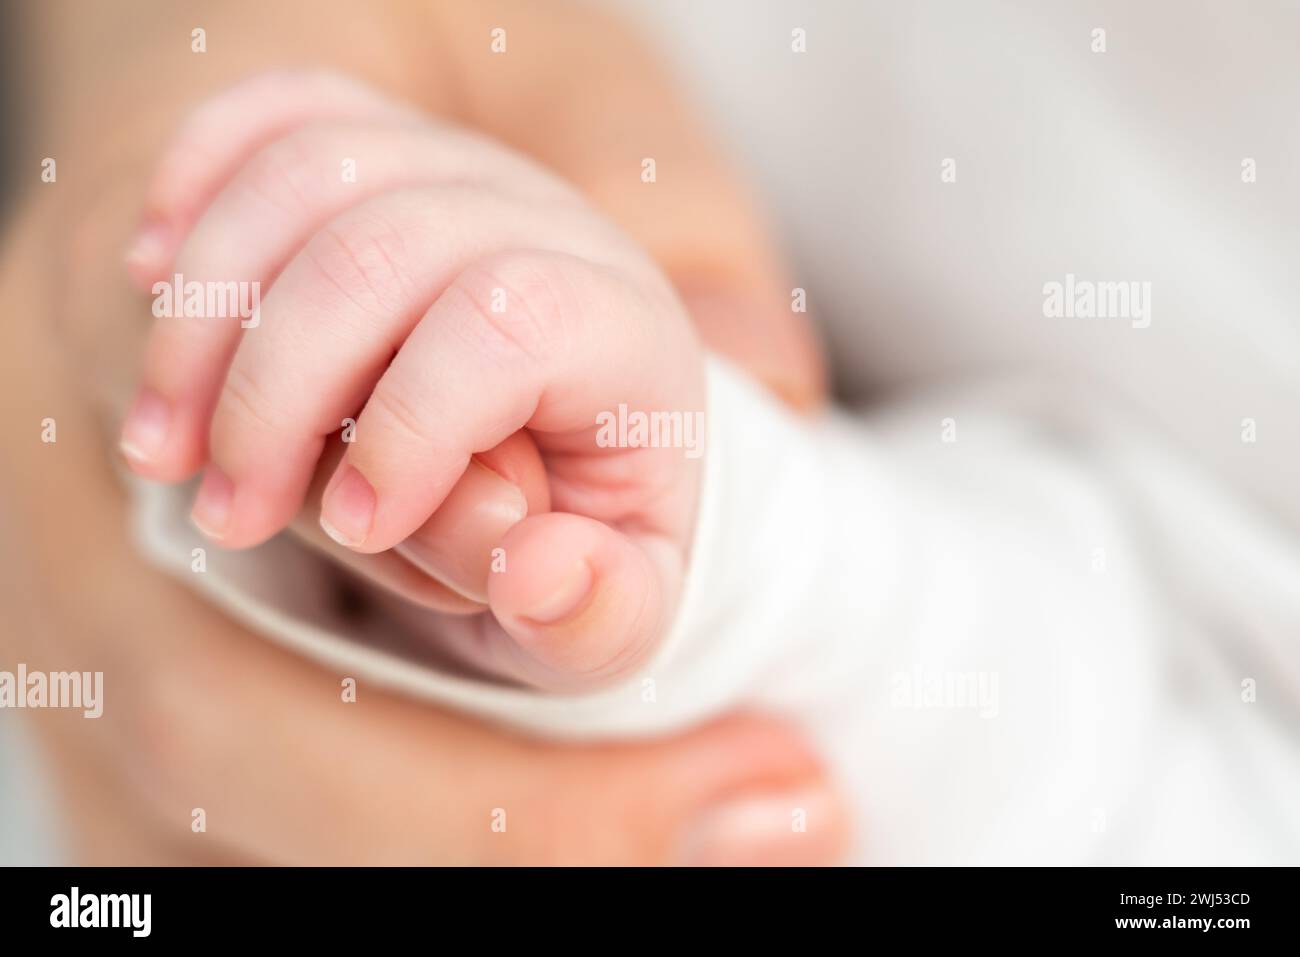 Nel sonno, il neonato si aggrappa al calore materno. Concetto di obbligazioni infrangibili formatosi in anticipo Foto Stock